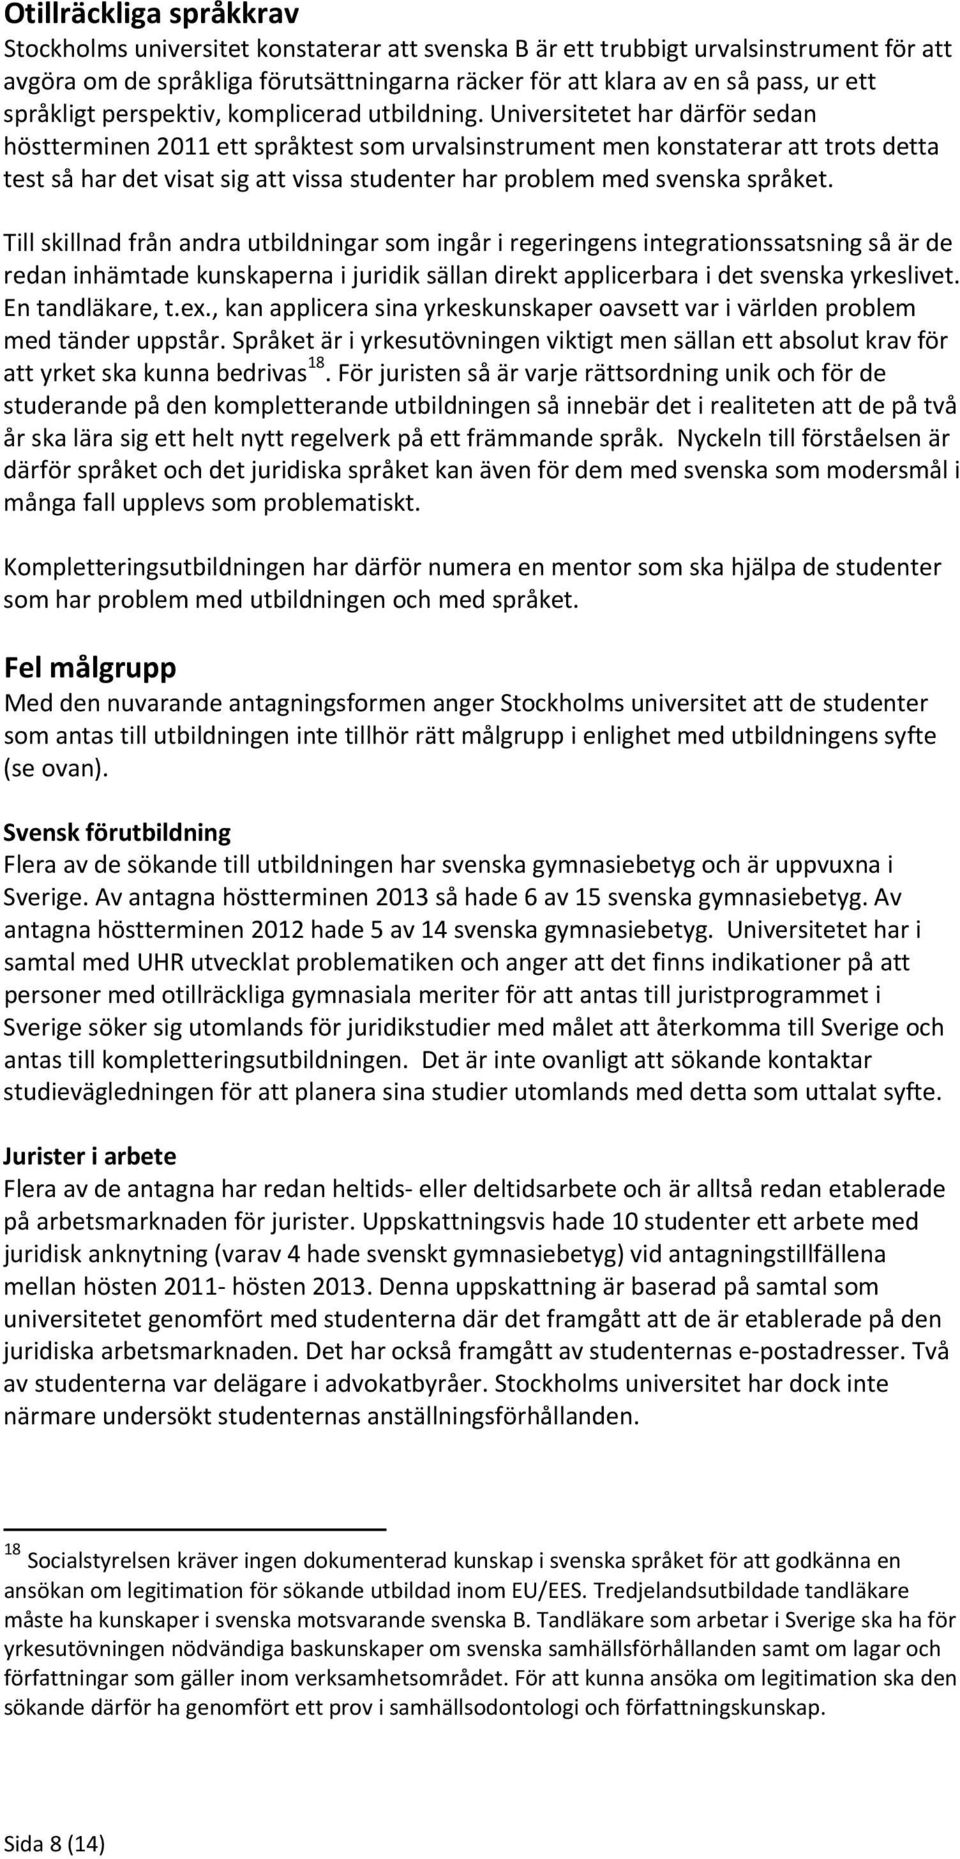 Universitetet har därför sedan höstterminen 2011 ett språktest som urvalsinstrument men konstaterar att trots detta test så har det visat sig att vissa studenter har problem med svenska språket.